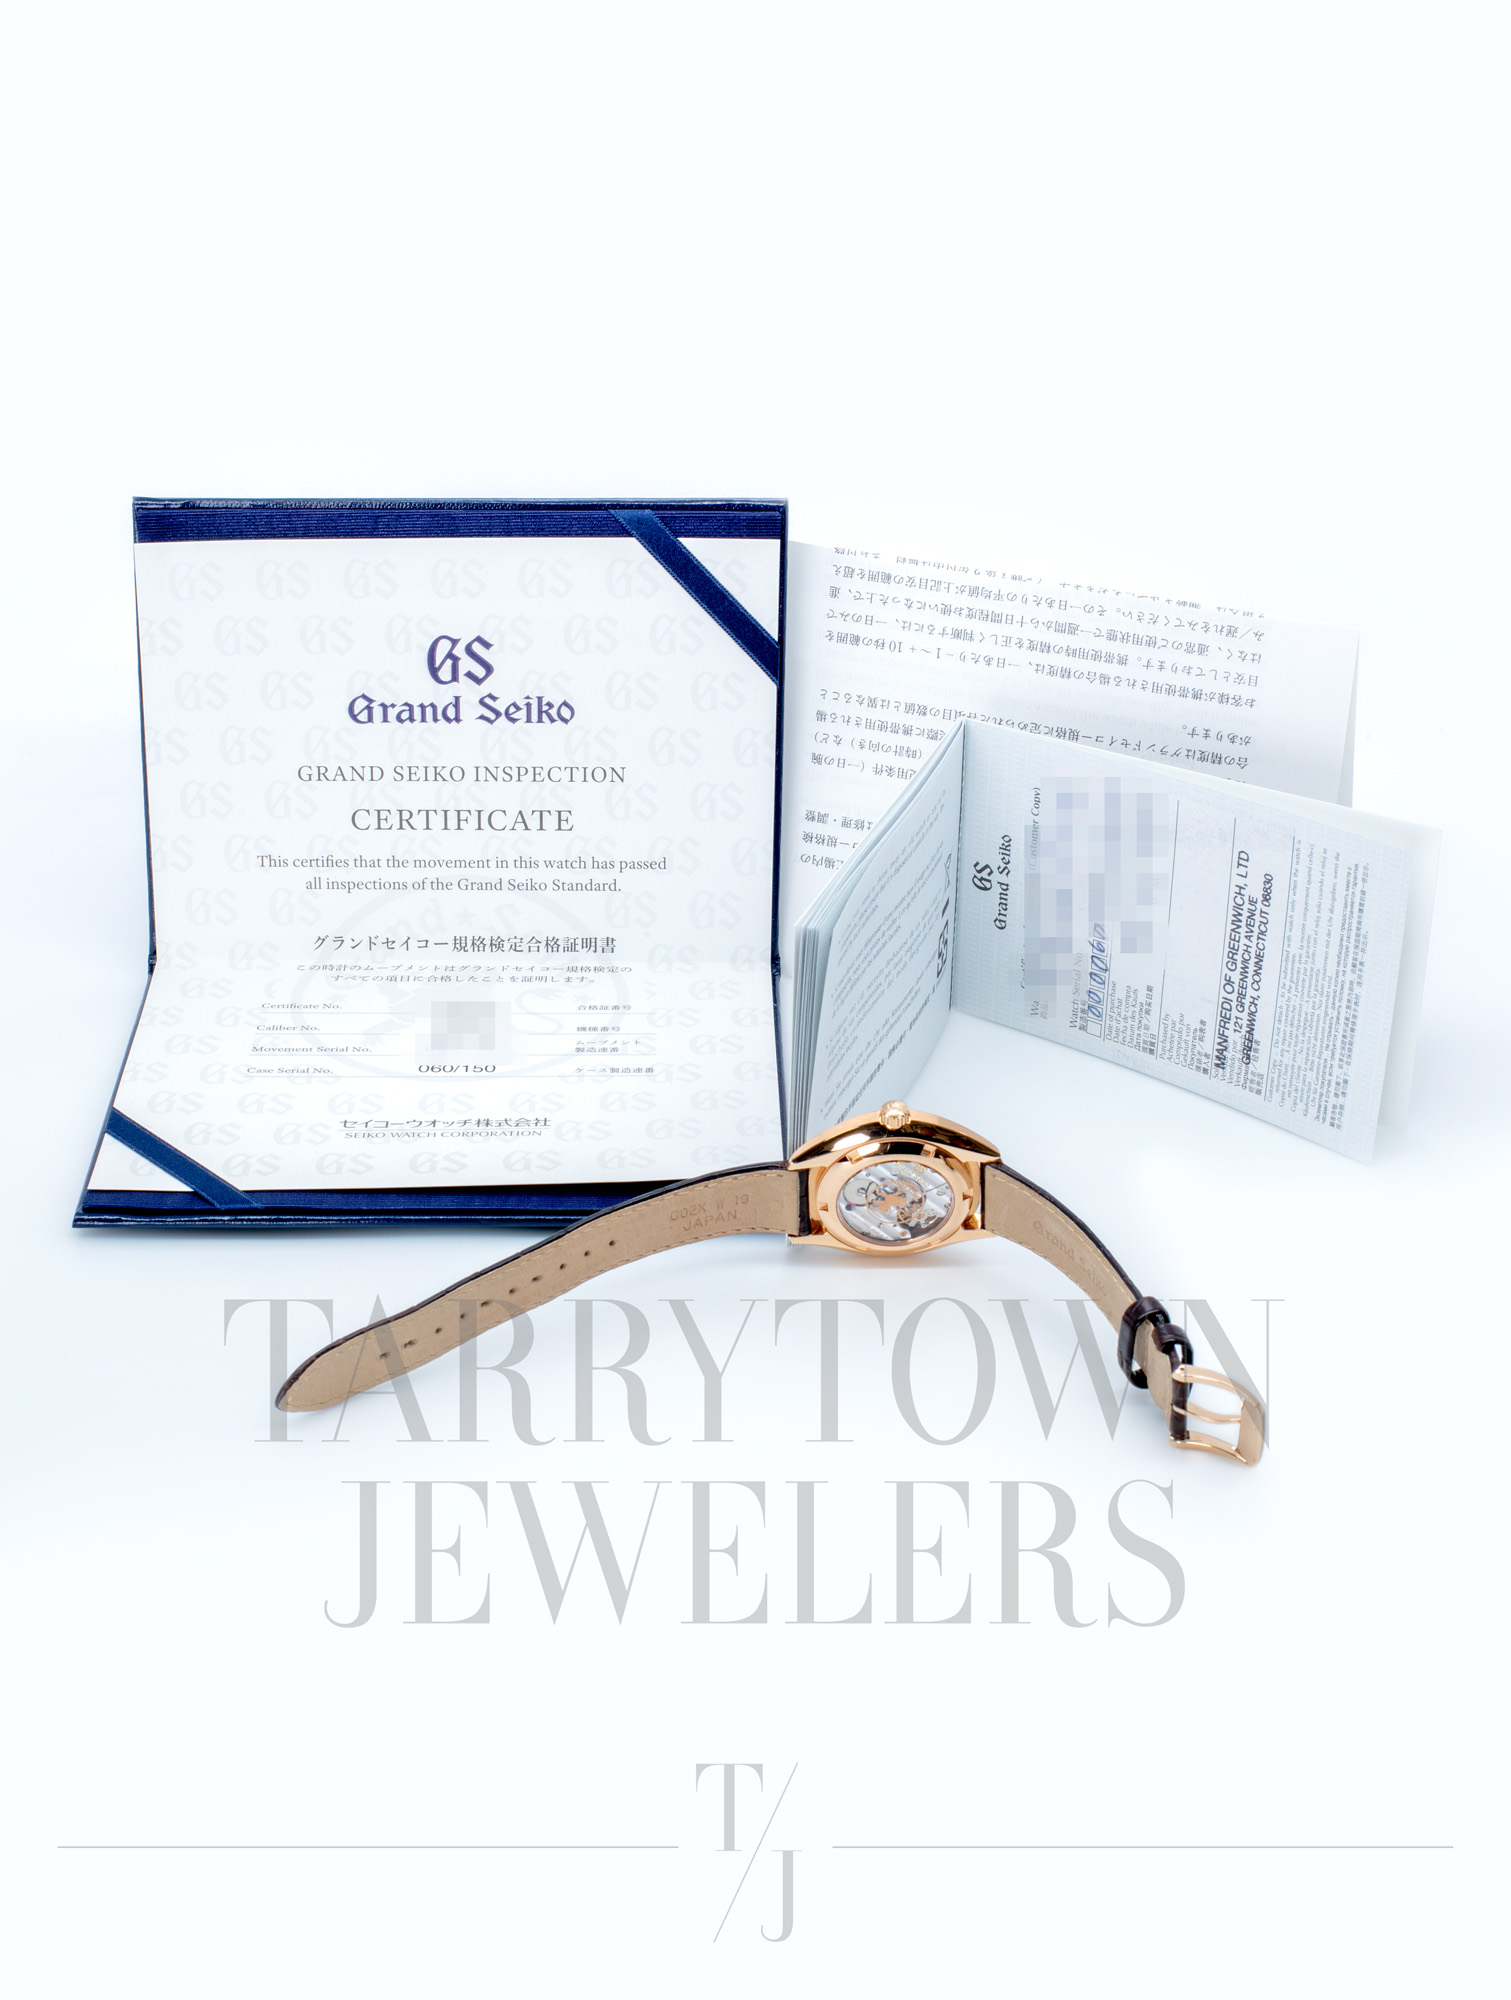 Elegance Collection Limited SBGK002 SBGK002 - Tarrytown Jewelers